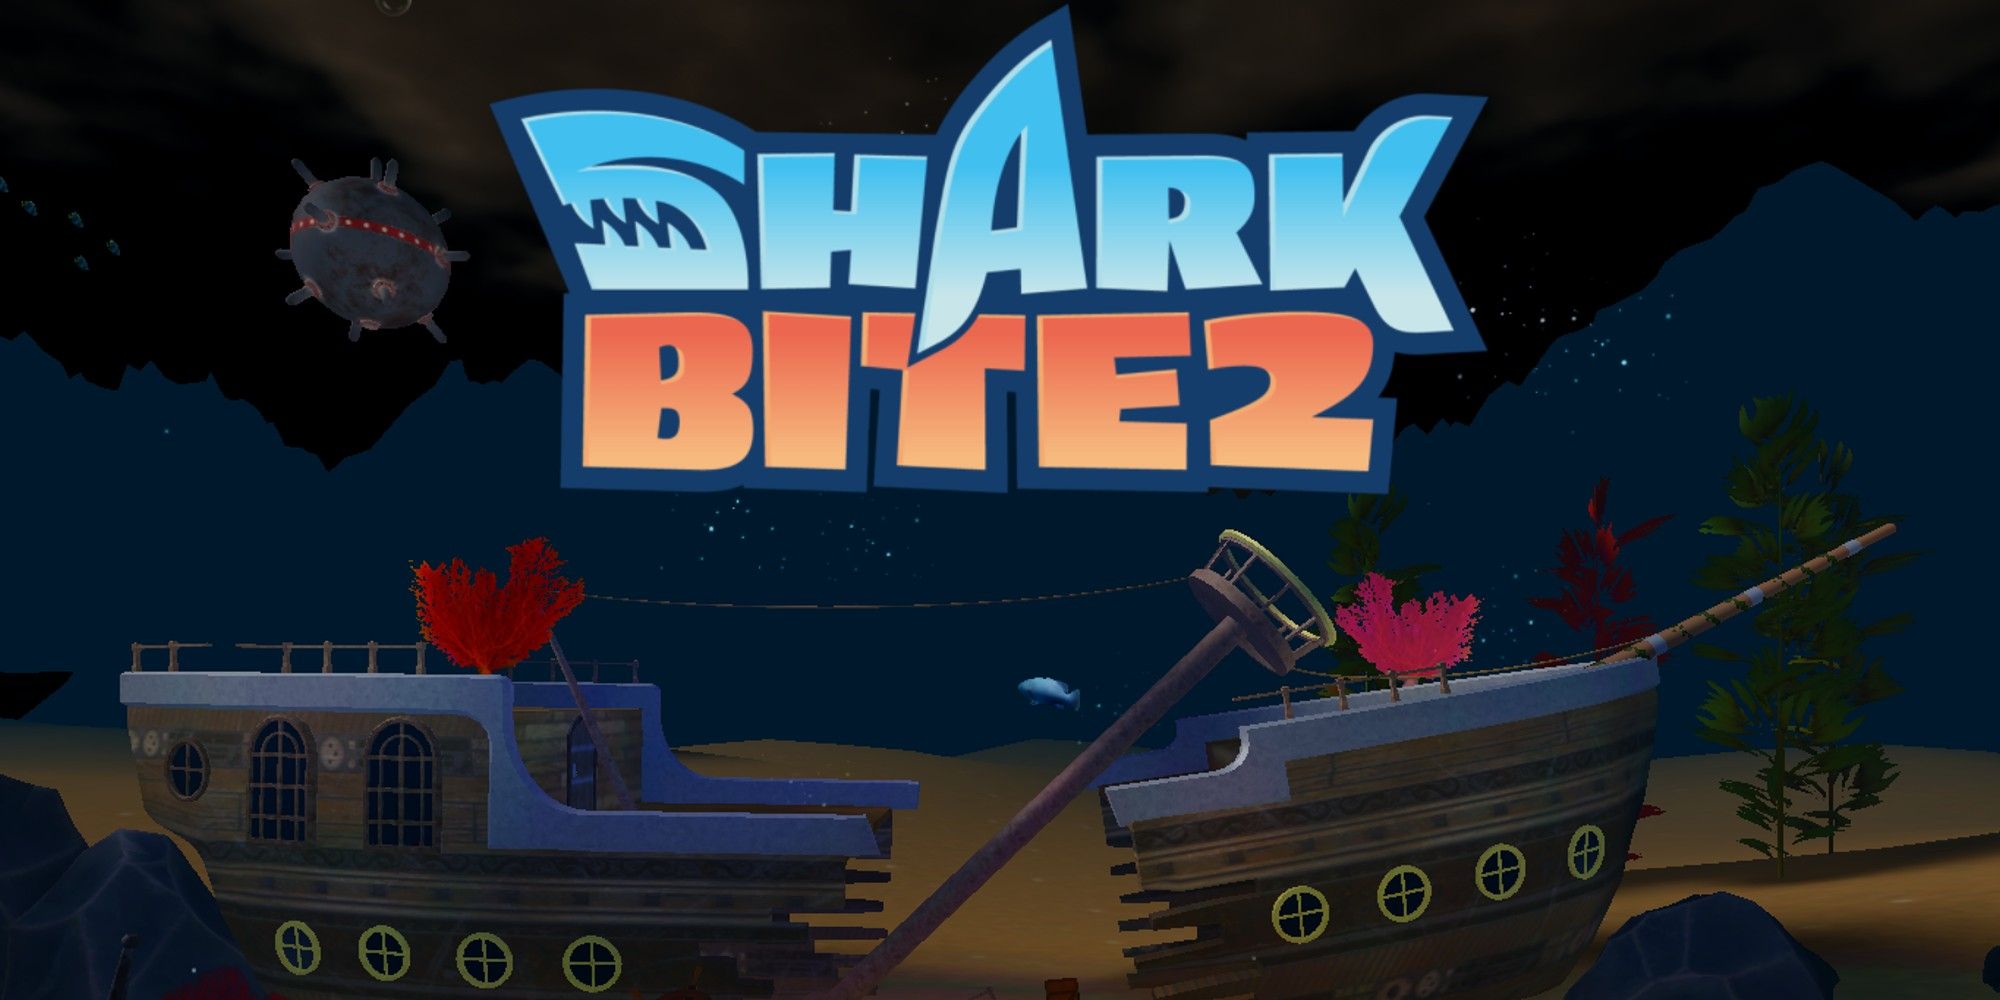 Sharkbite 2